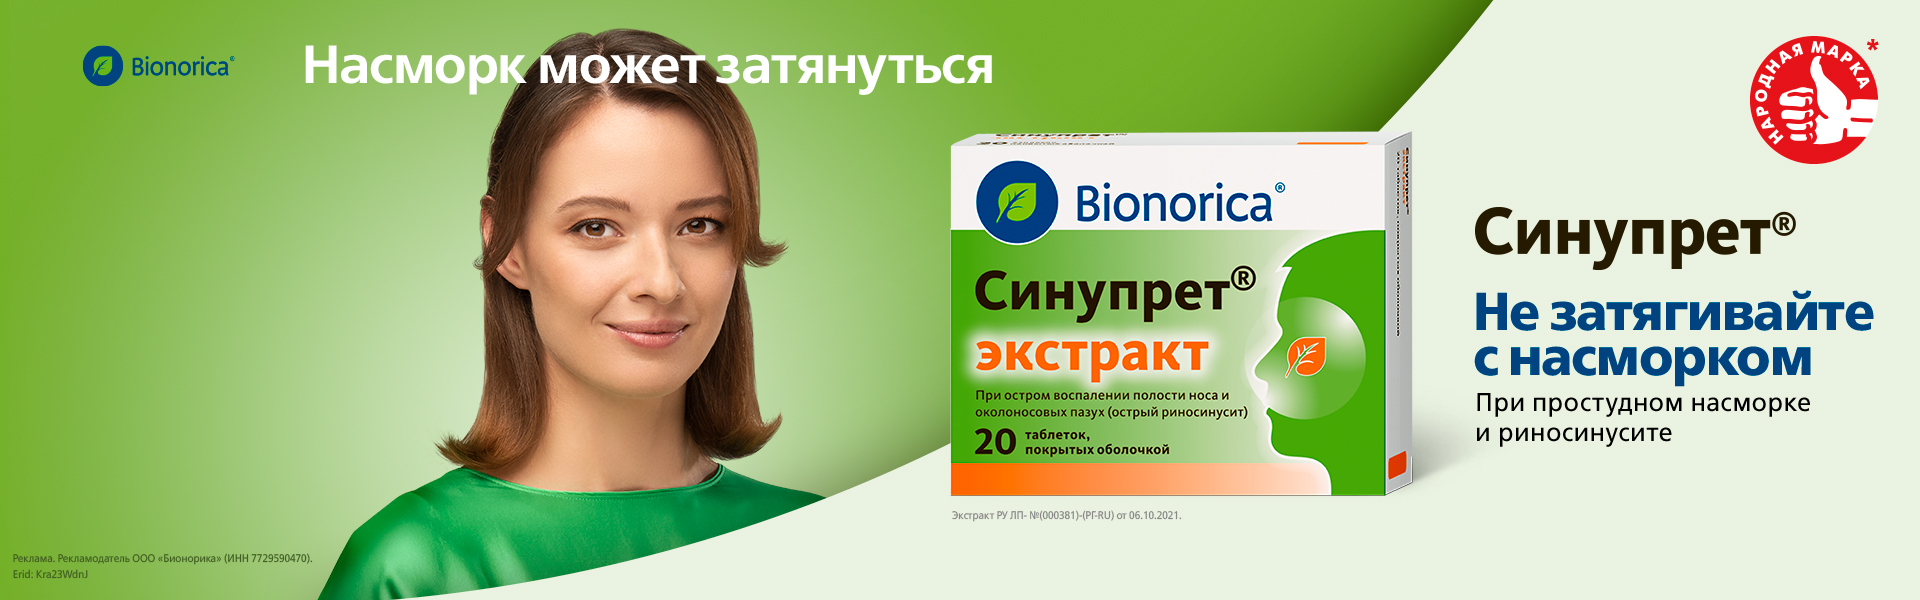 Синупрет® - растительный лекарственный препарат для лечения затяжного насморка и риносинусита